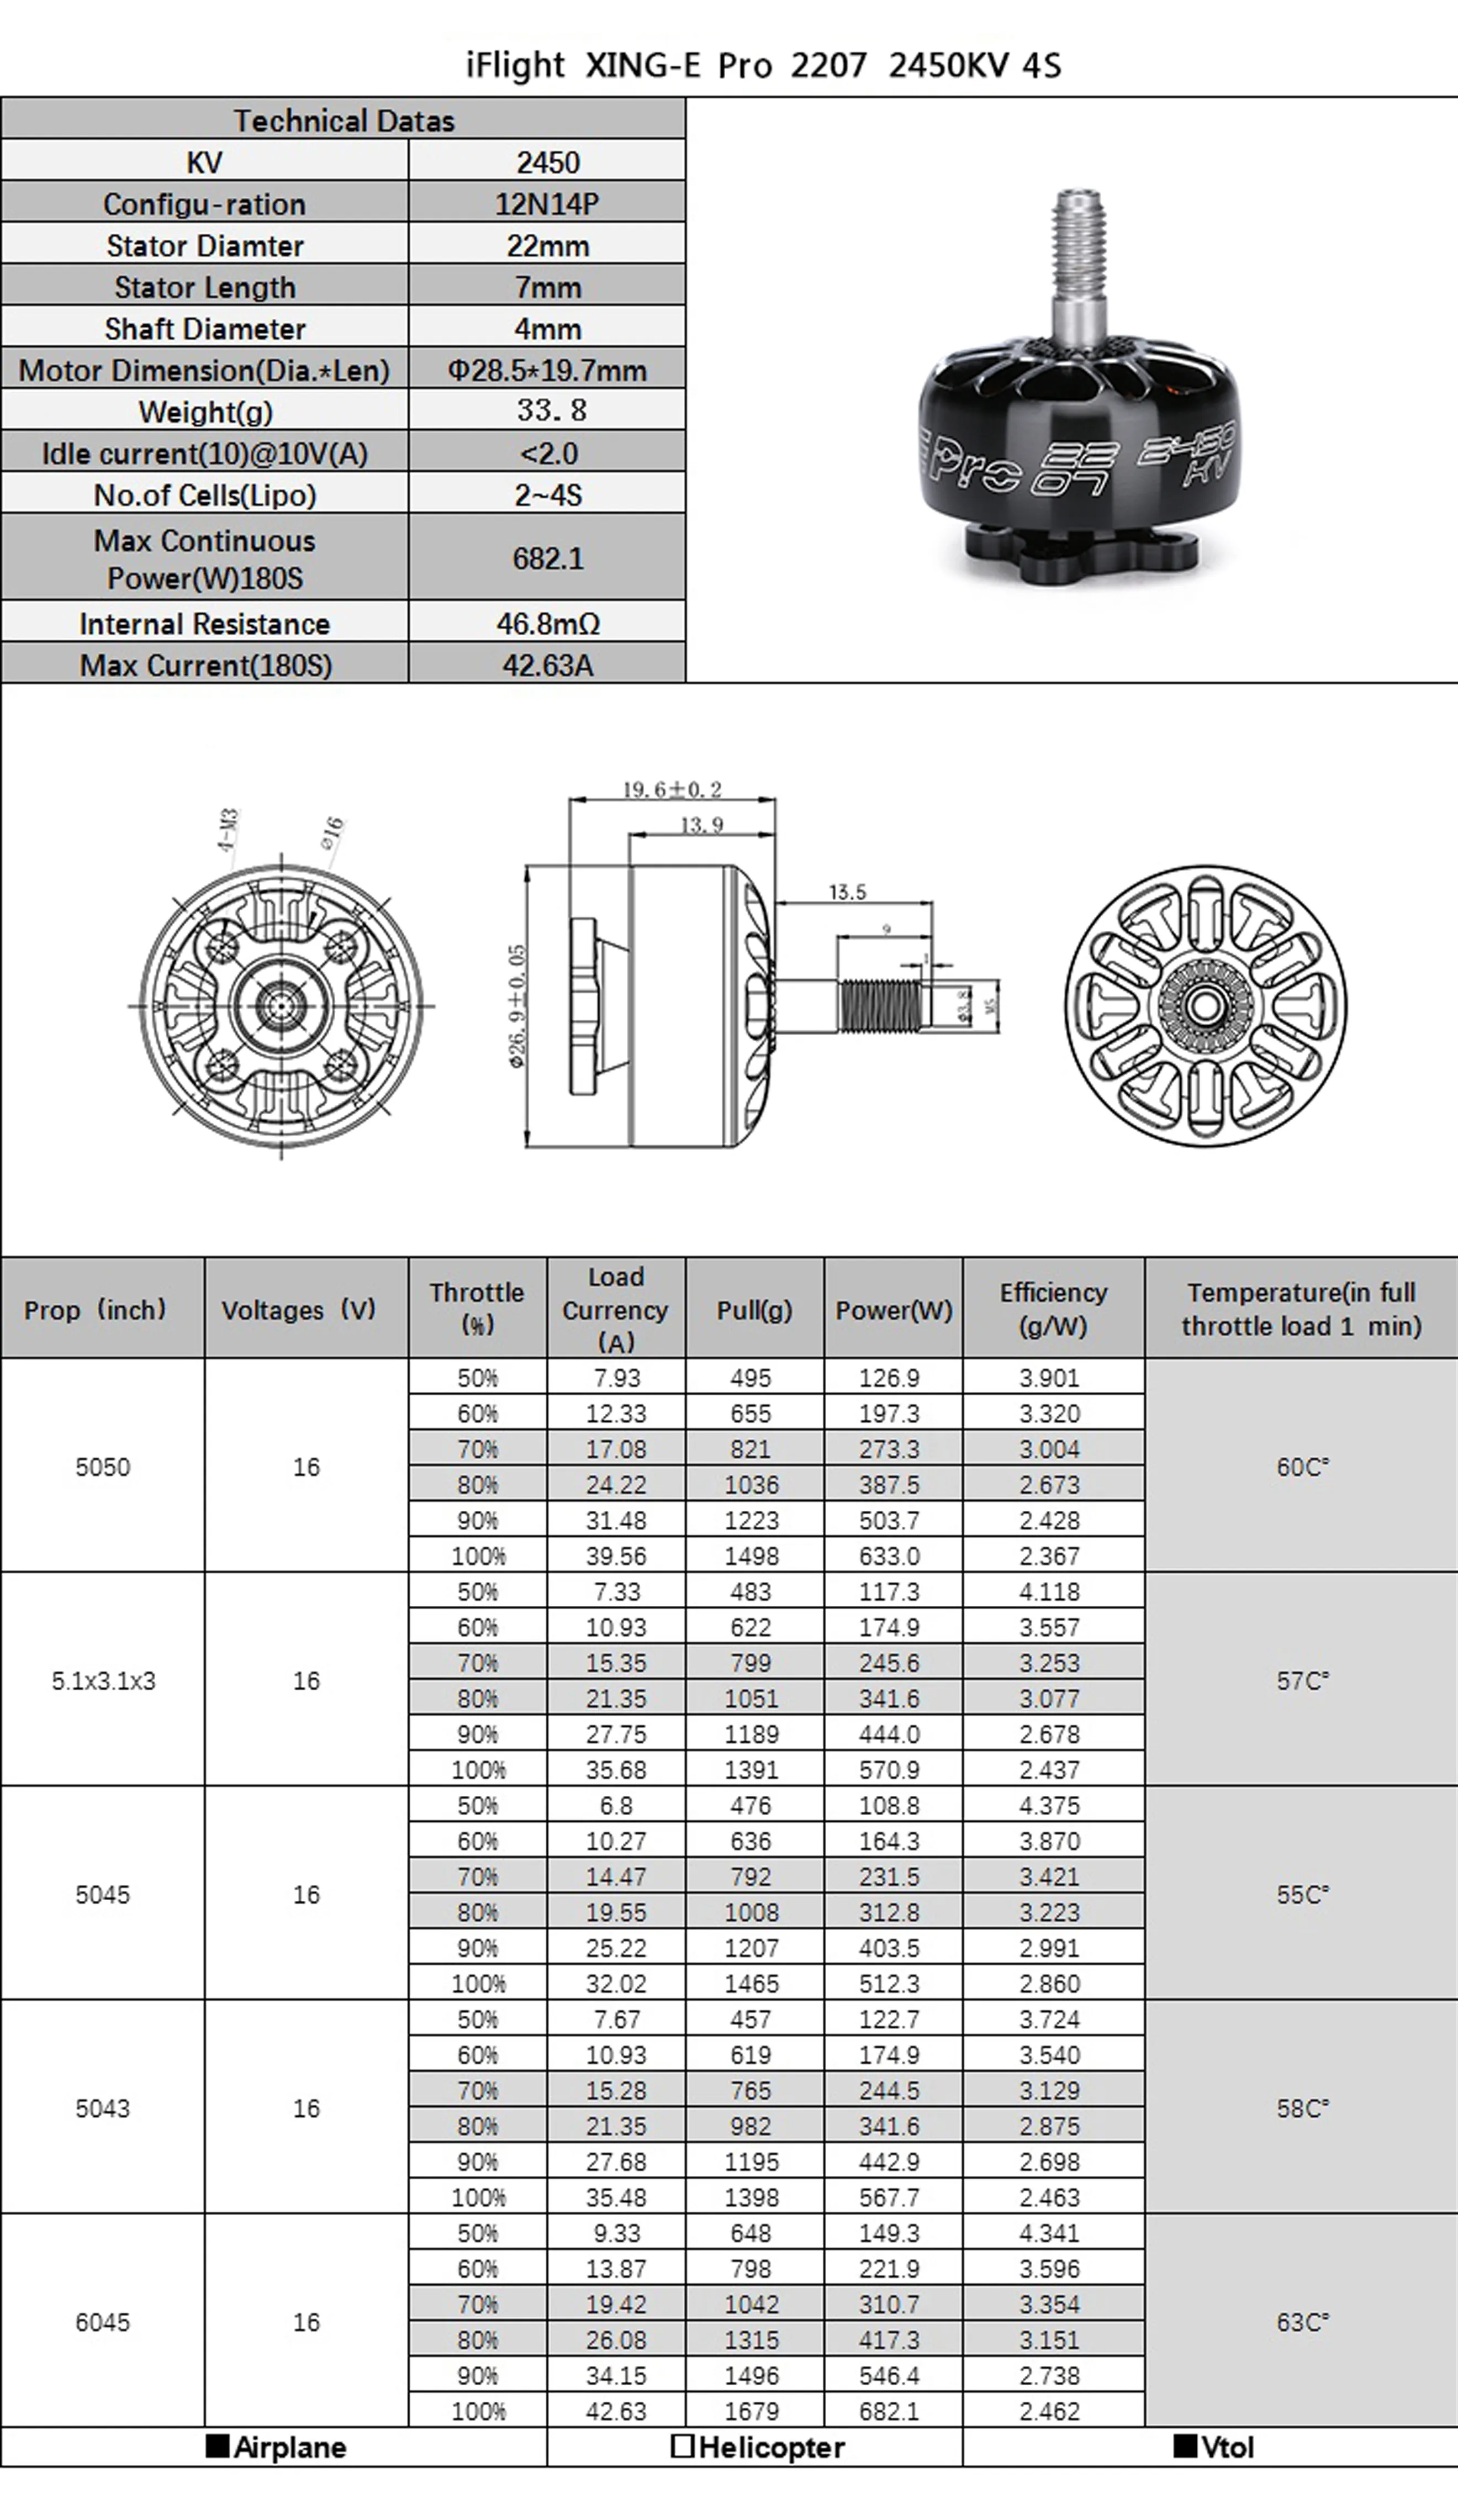 iFlight XING E Pro 2207 FPV motor 2450KV testing